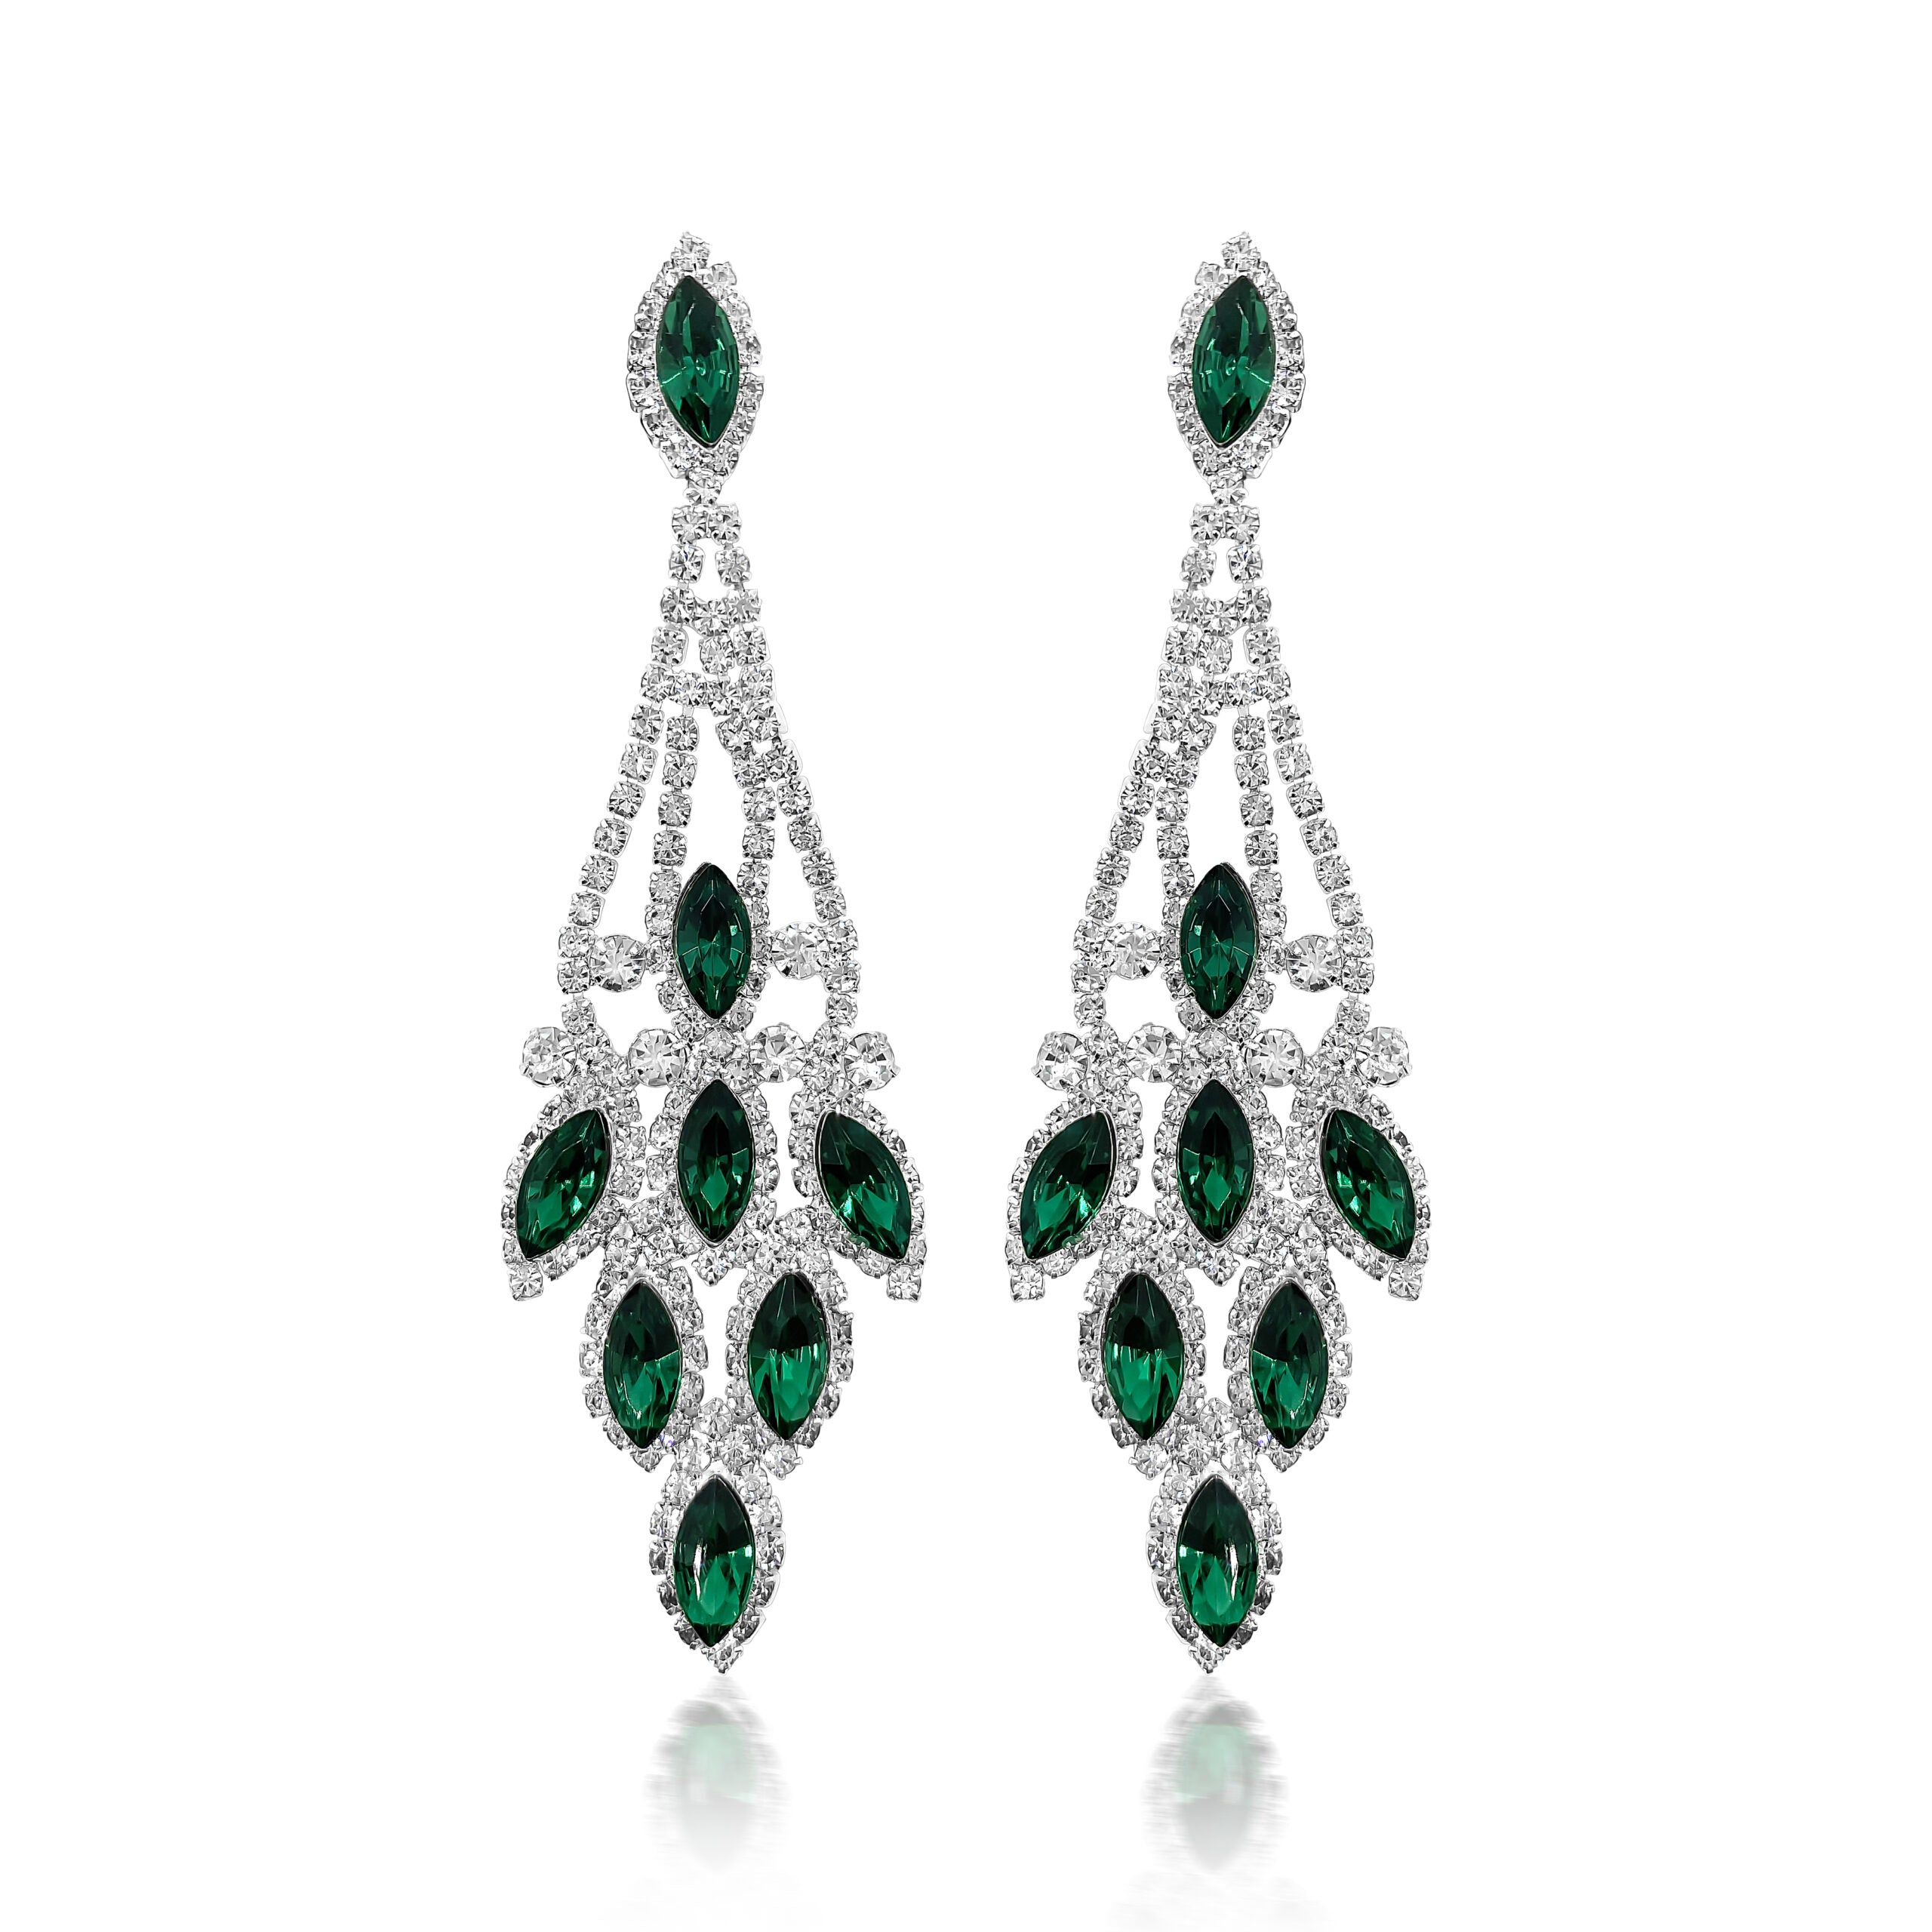 Indira - clear emerald green rhinestone earrings